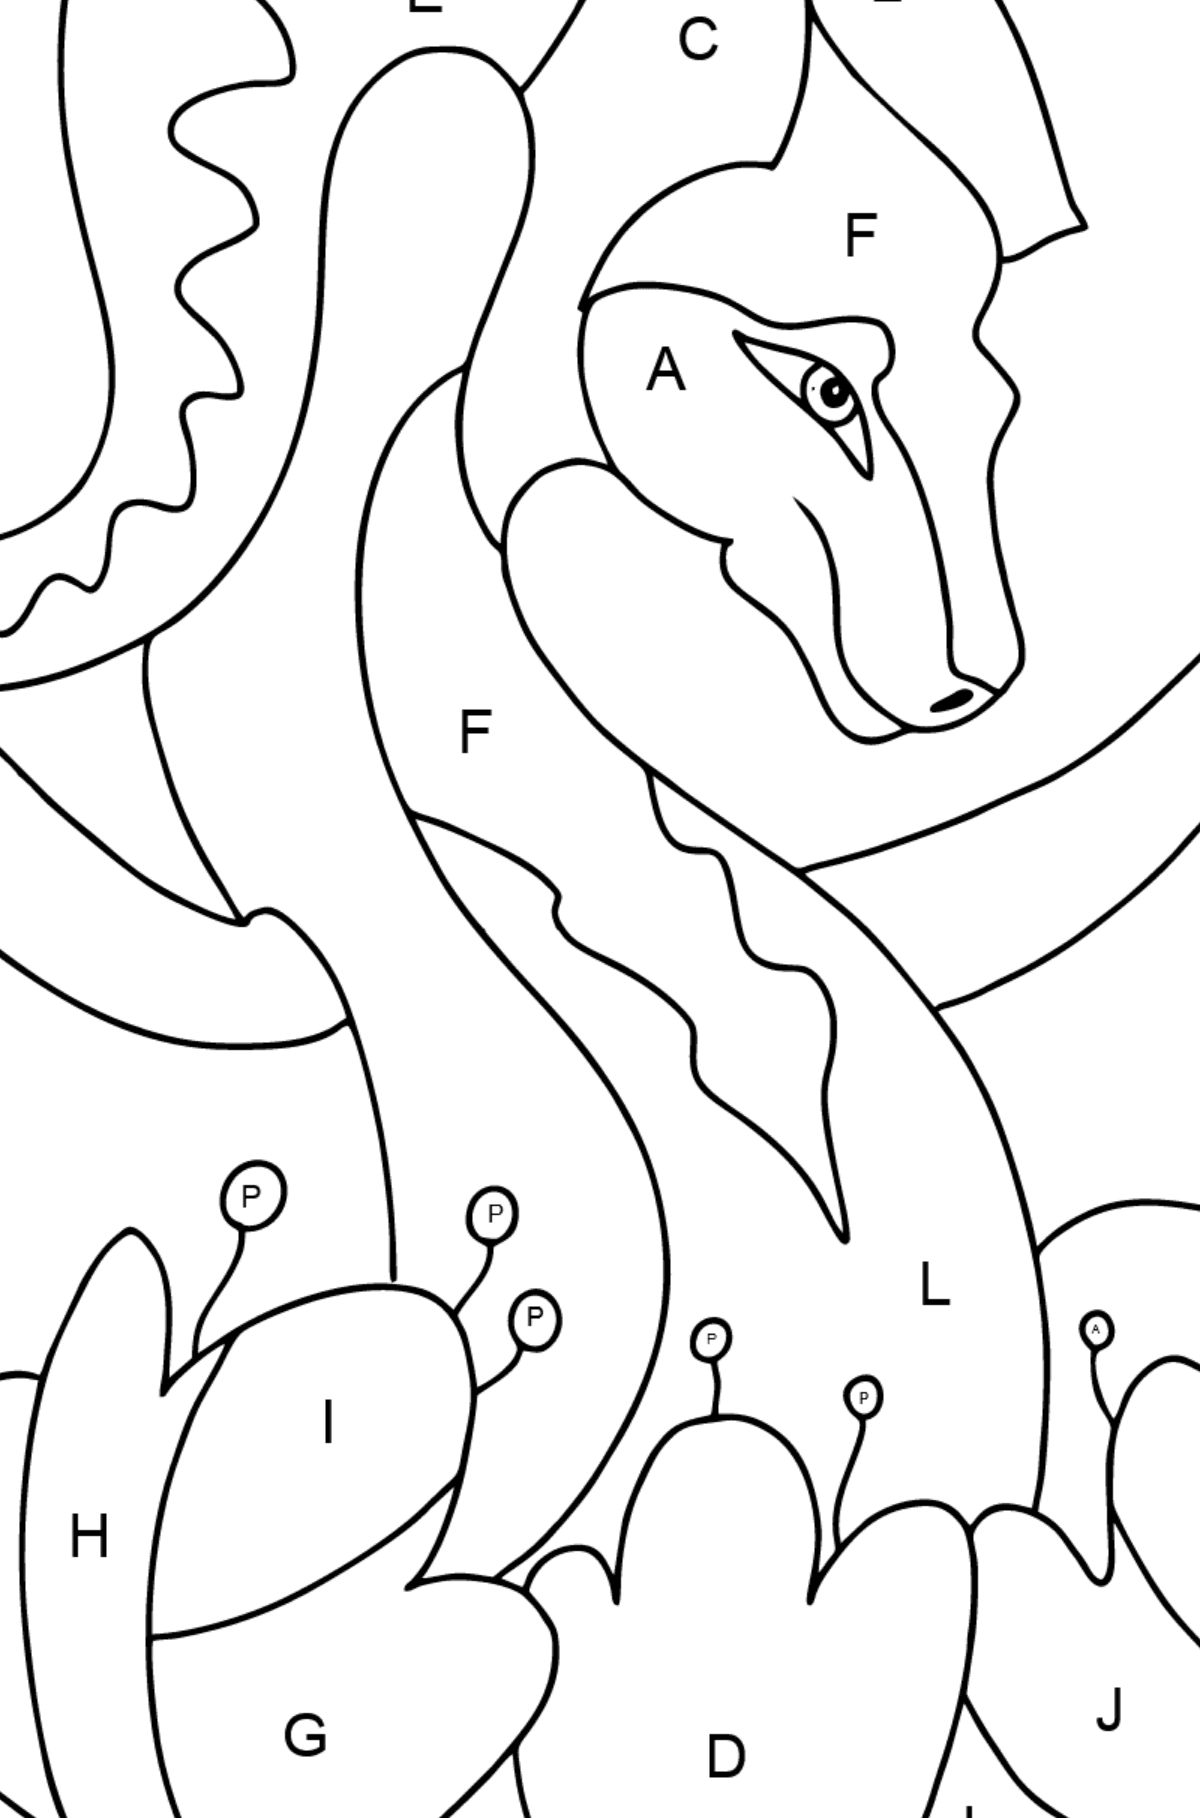 Coloriage Dragon coloré (difficile) - Coloriage par Lettres pour les Enfants